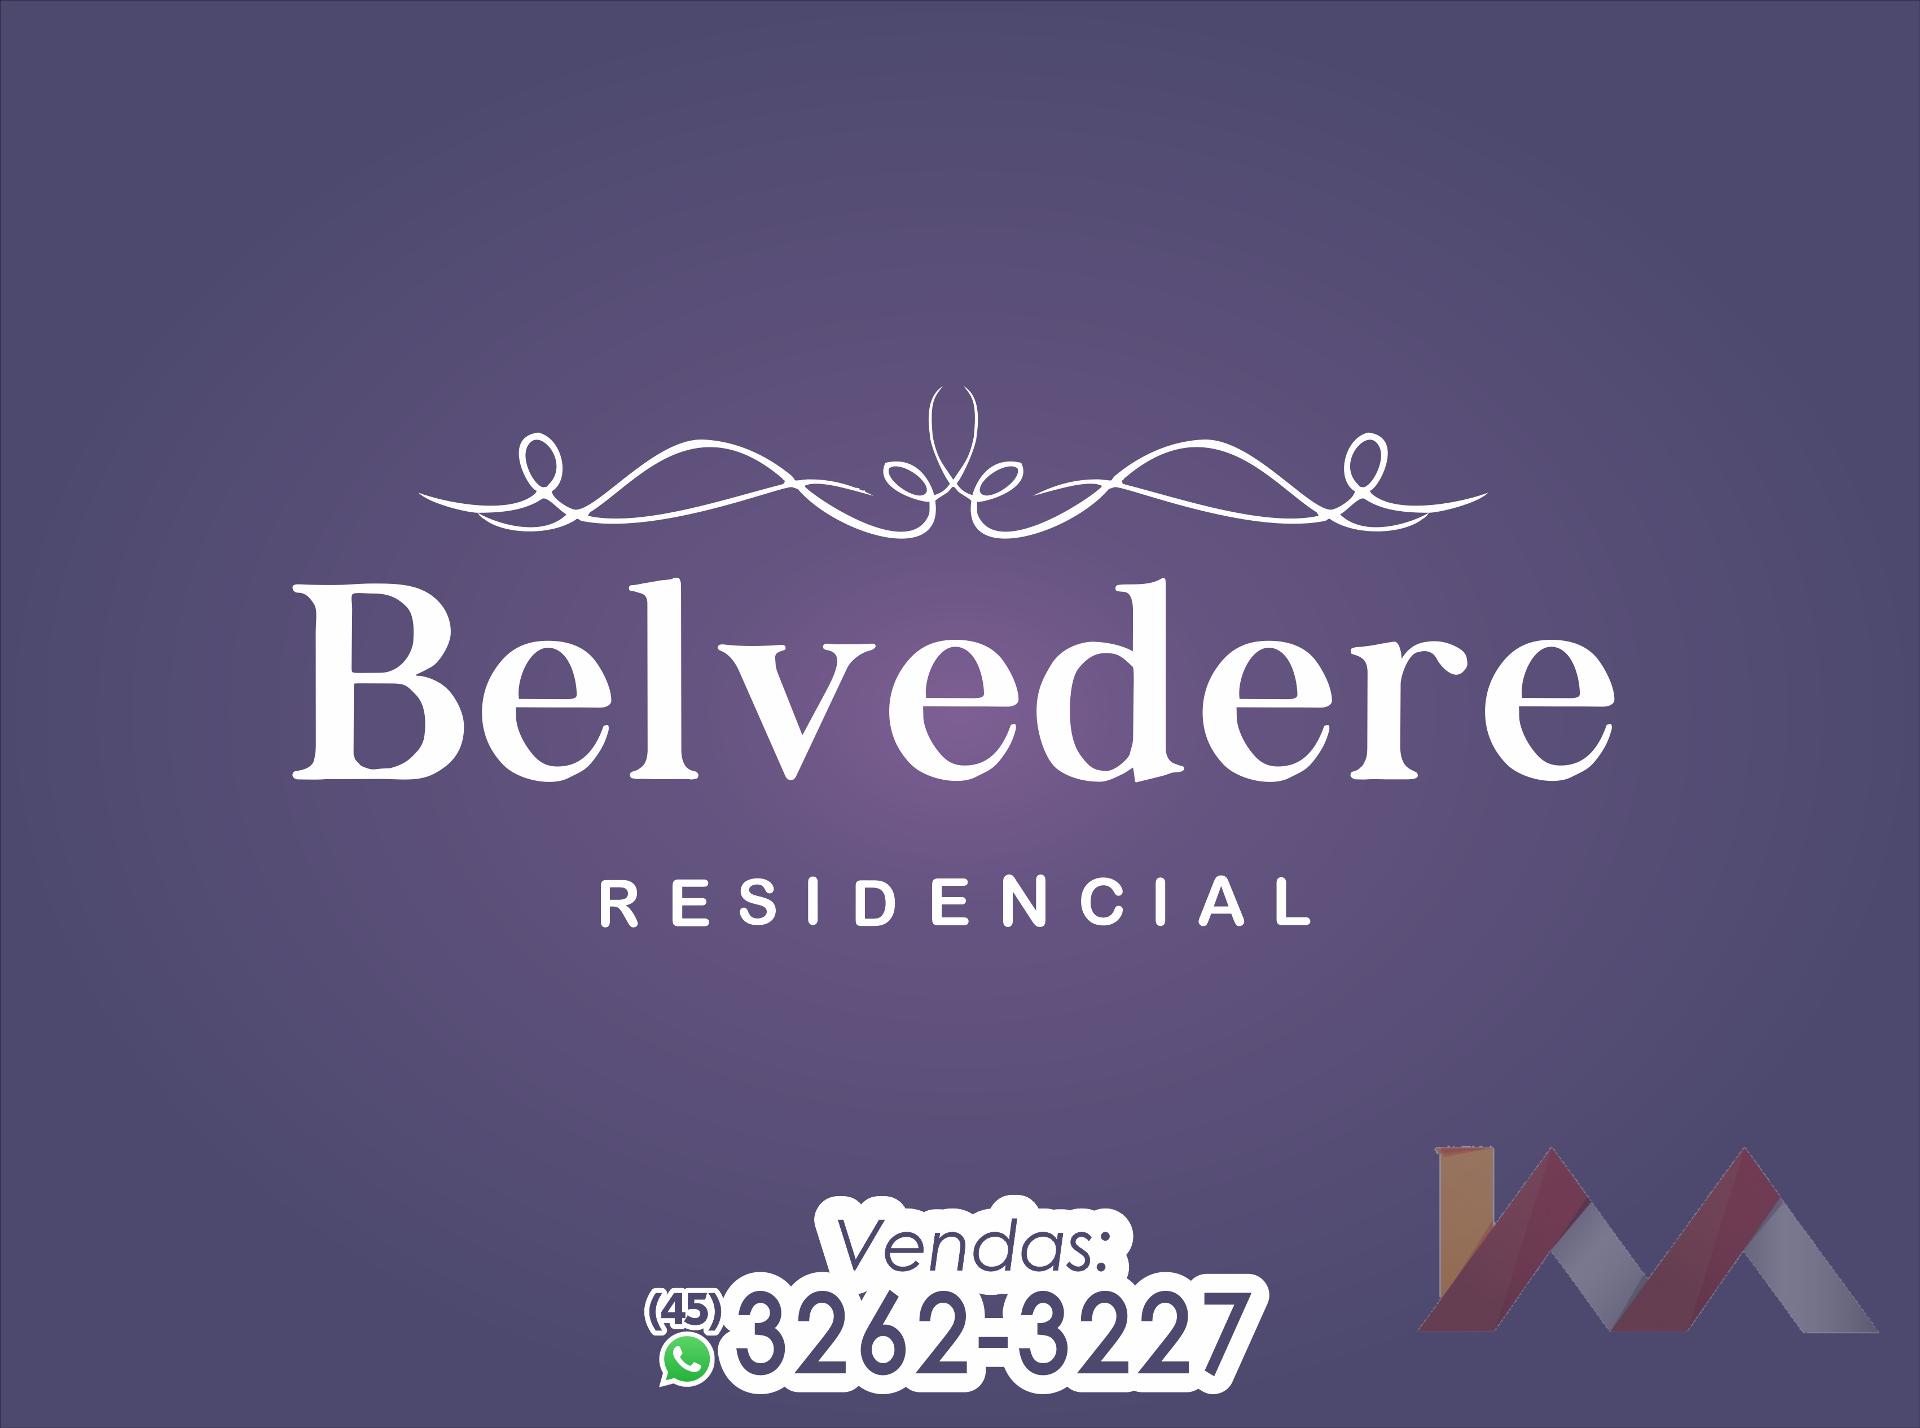 Apartamento 109 do Residencial Belvedere